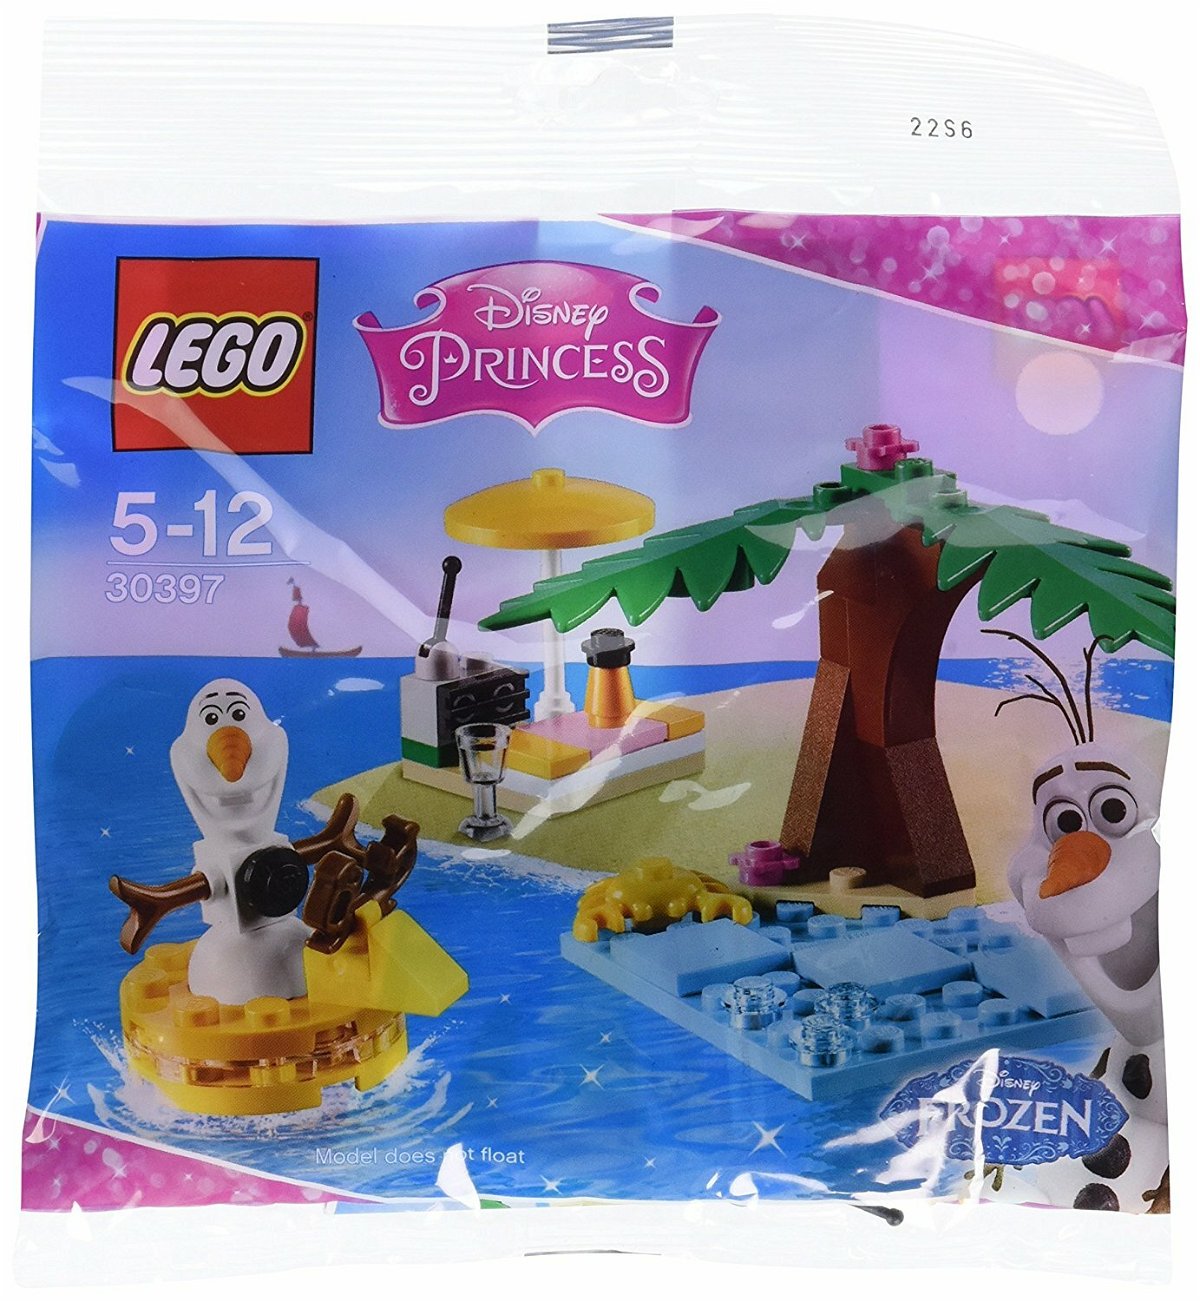 Dettagli della confezione del set LEGO Il divertimento estivo di Olaf 